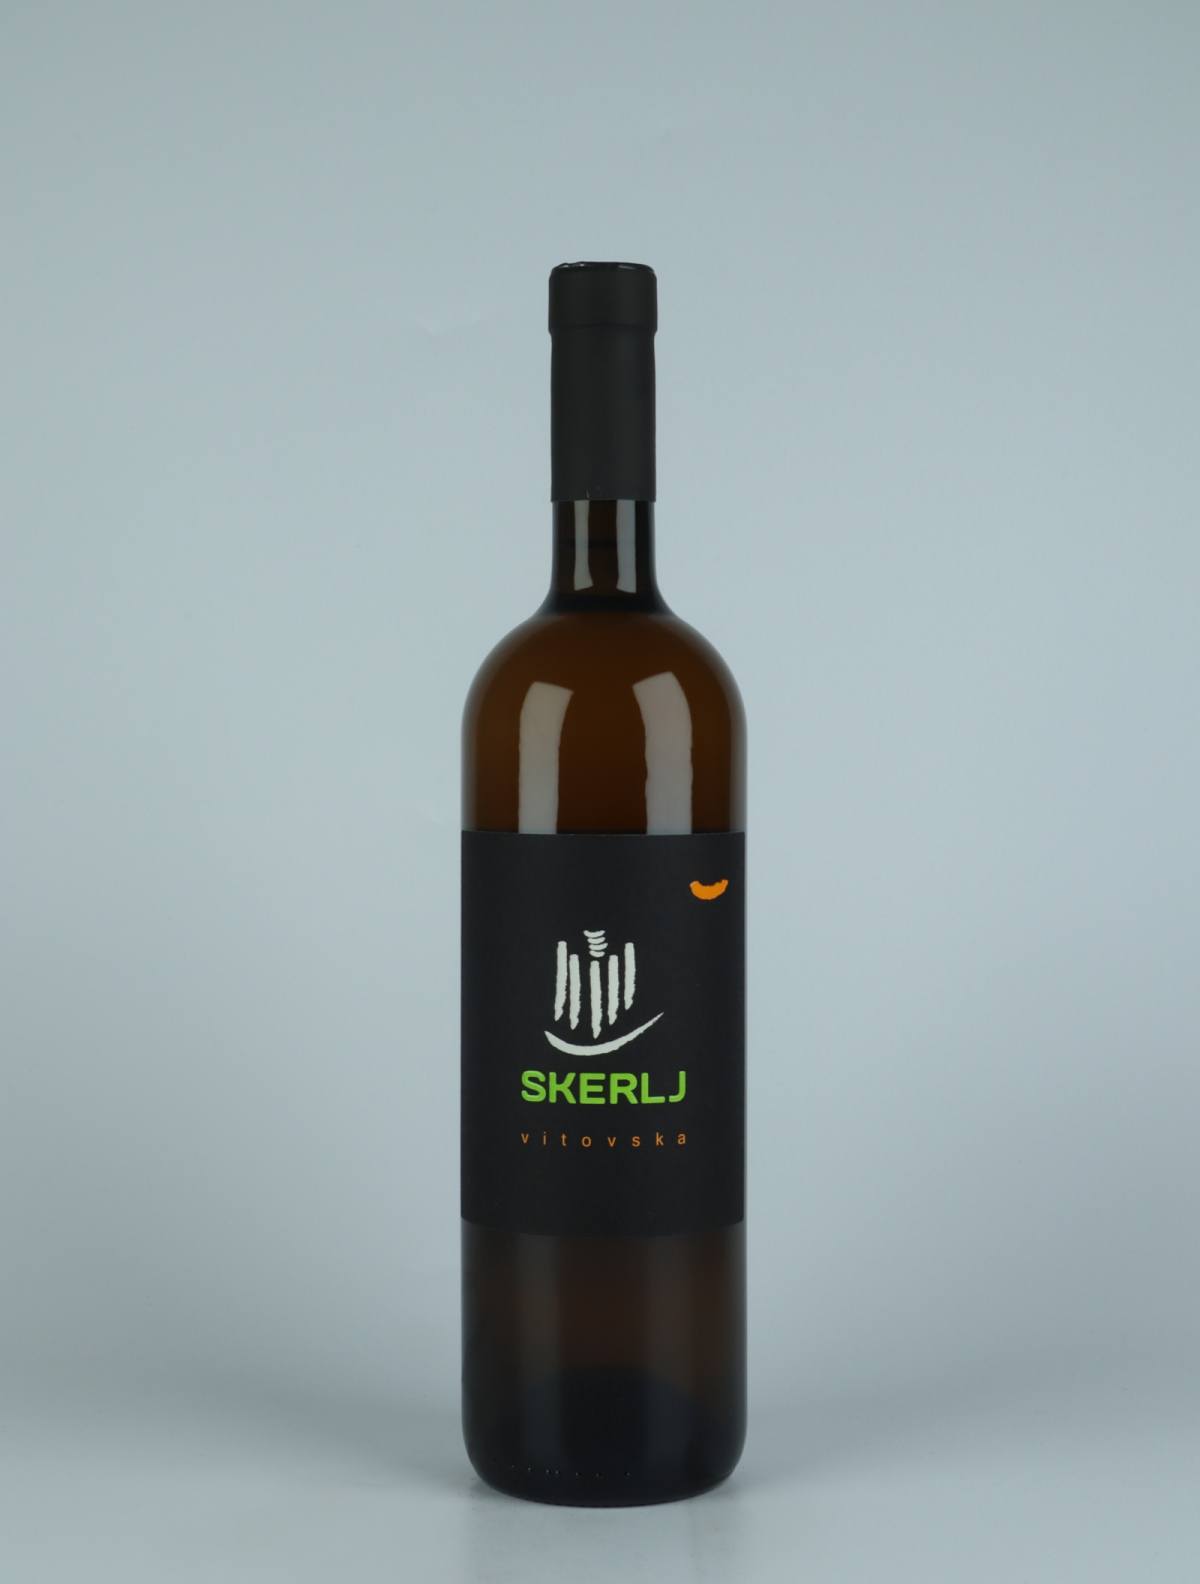 A bottle 2020 Vitovska Orange wine from Skerlj, Friuli in Italy